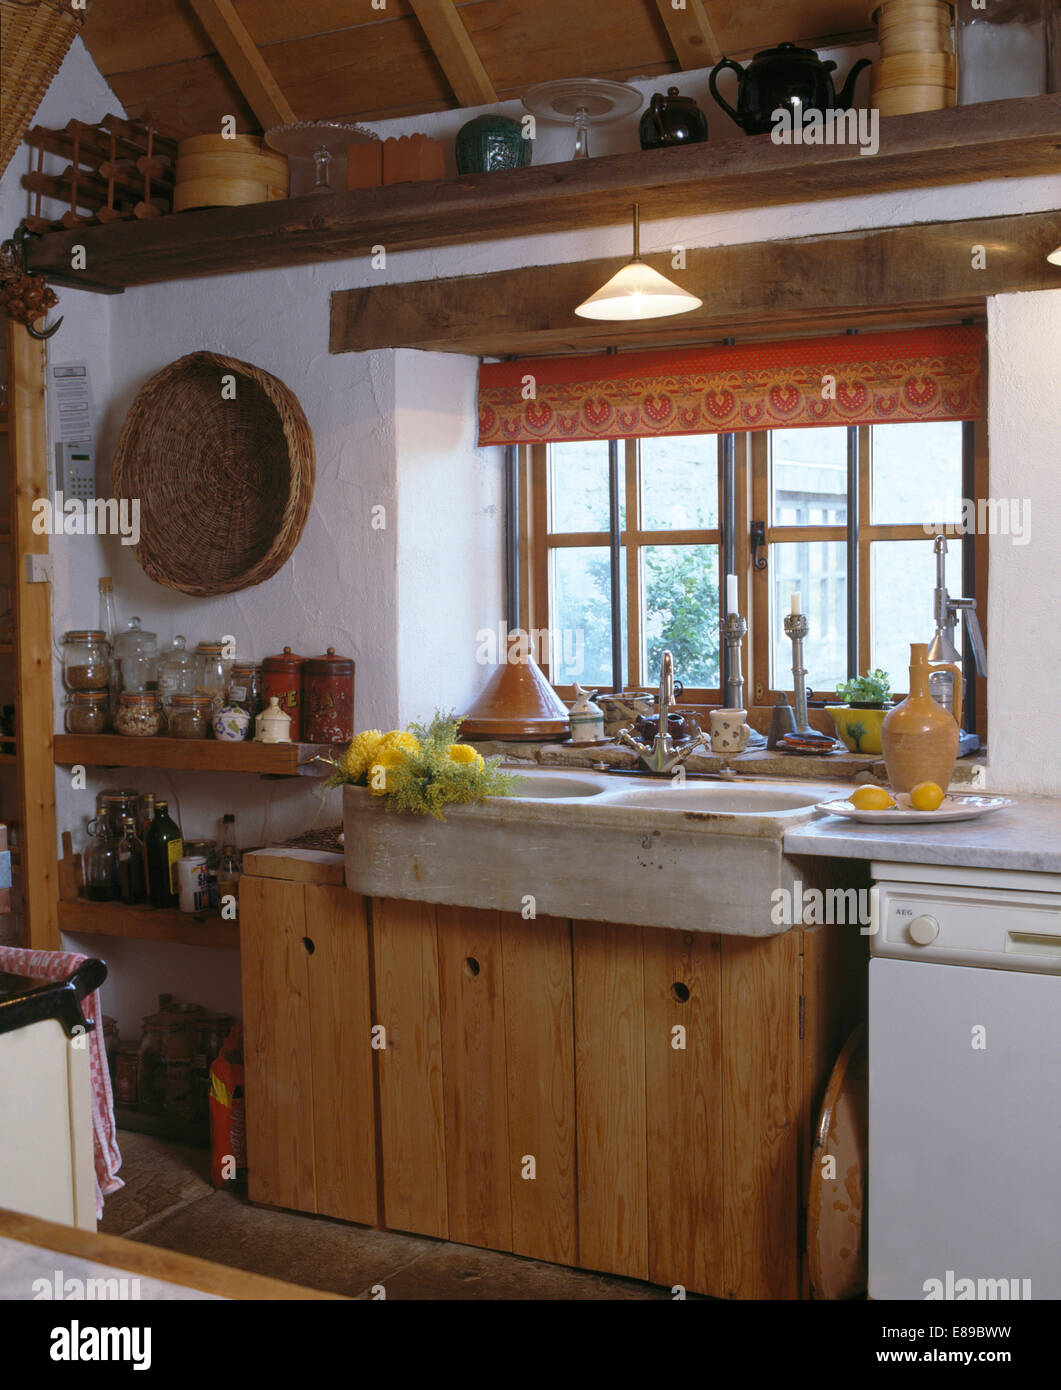 Rot blinde Fenster über dem alten Steingut einsinken Cottage-Küche mit rustikalen Holz und Holz Regale Stockfoto